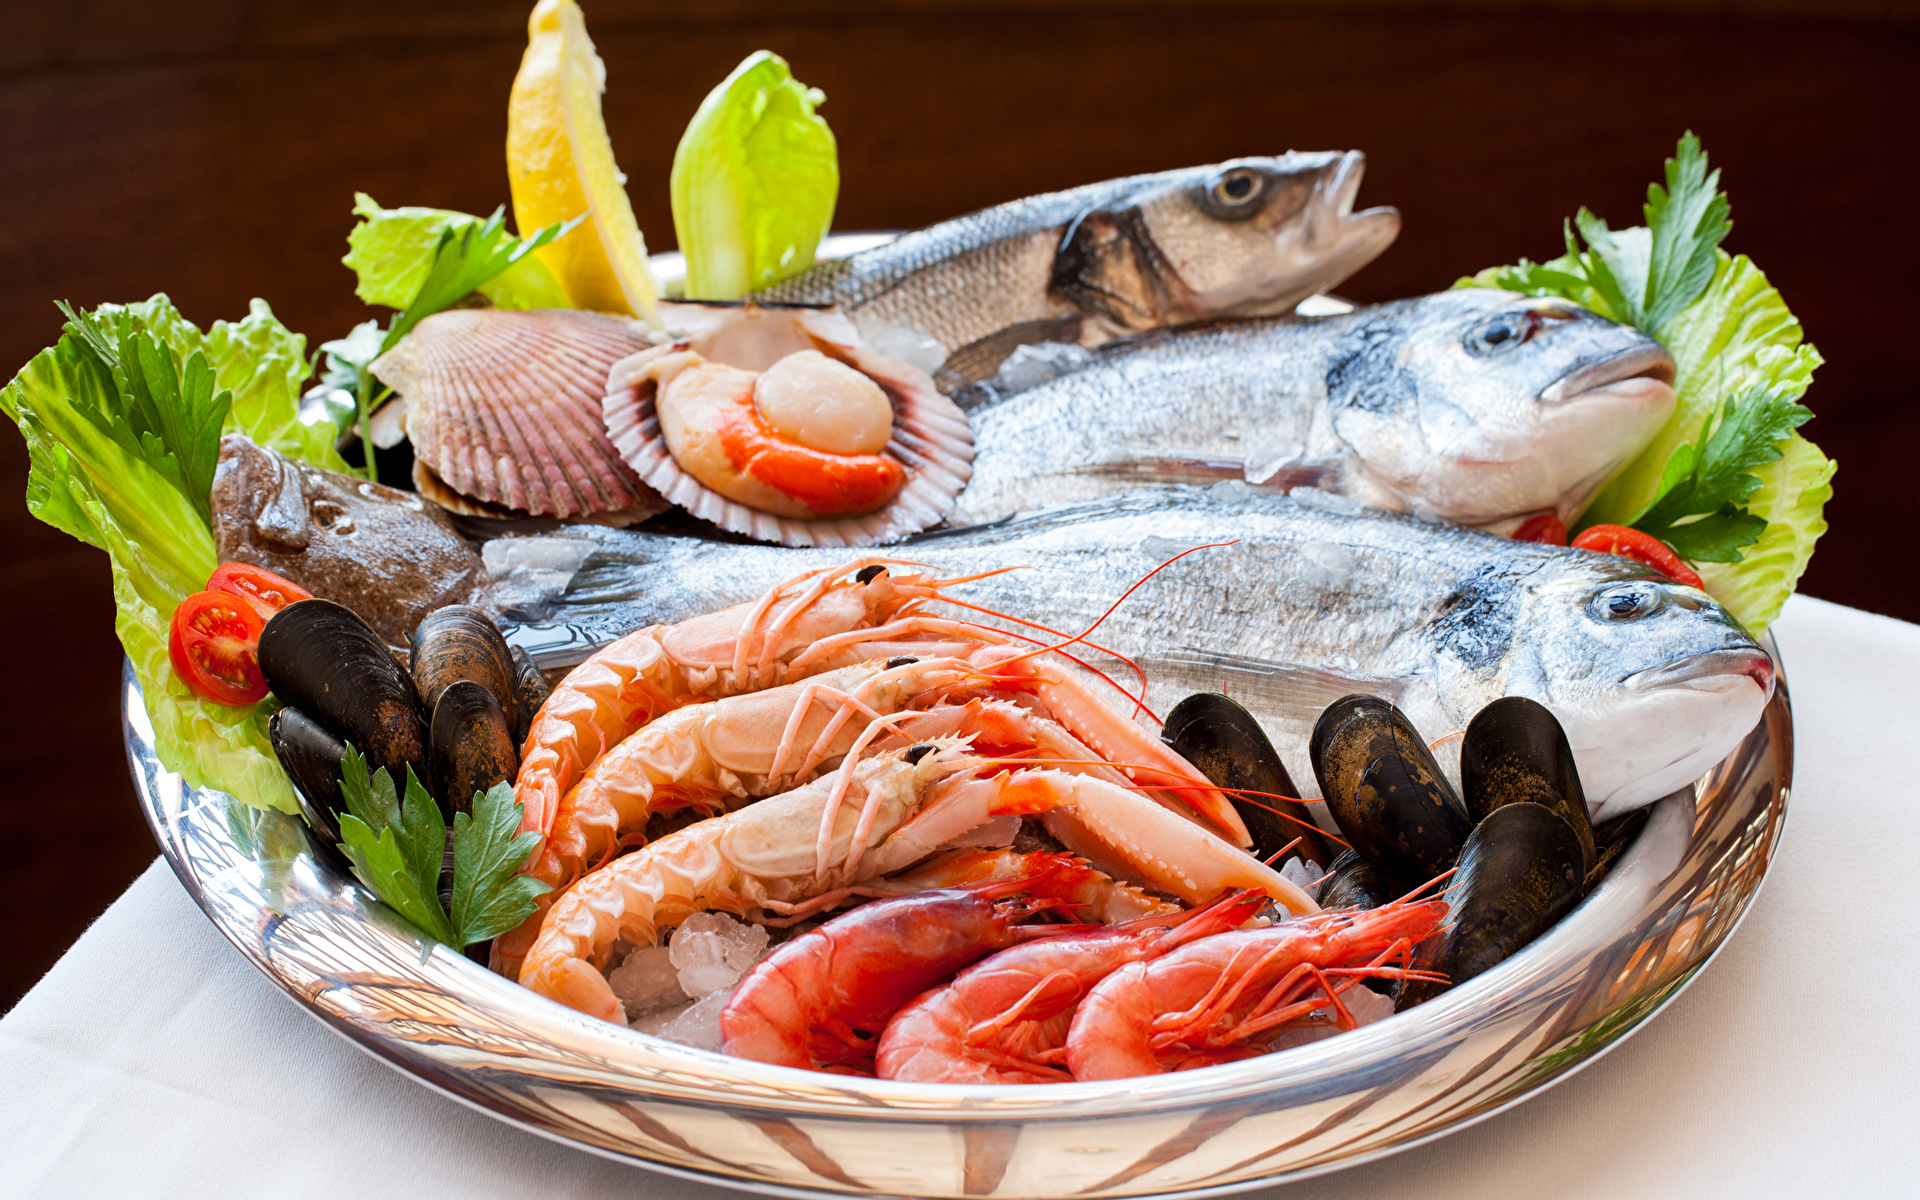 أسعار السمك والمأكولات البحرية اليوم في مصر شوف آخر الأسعار اليوم